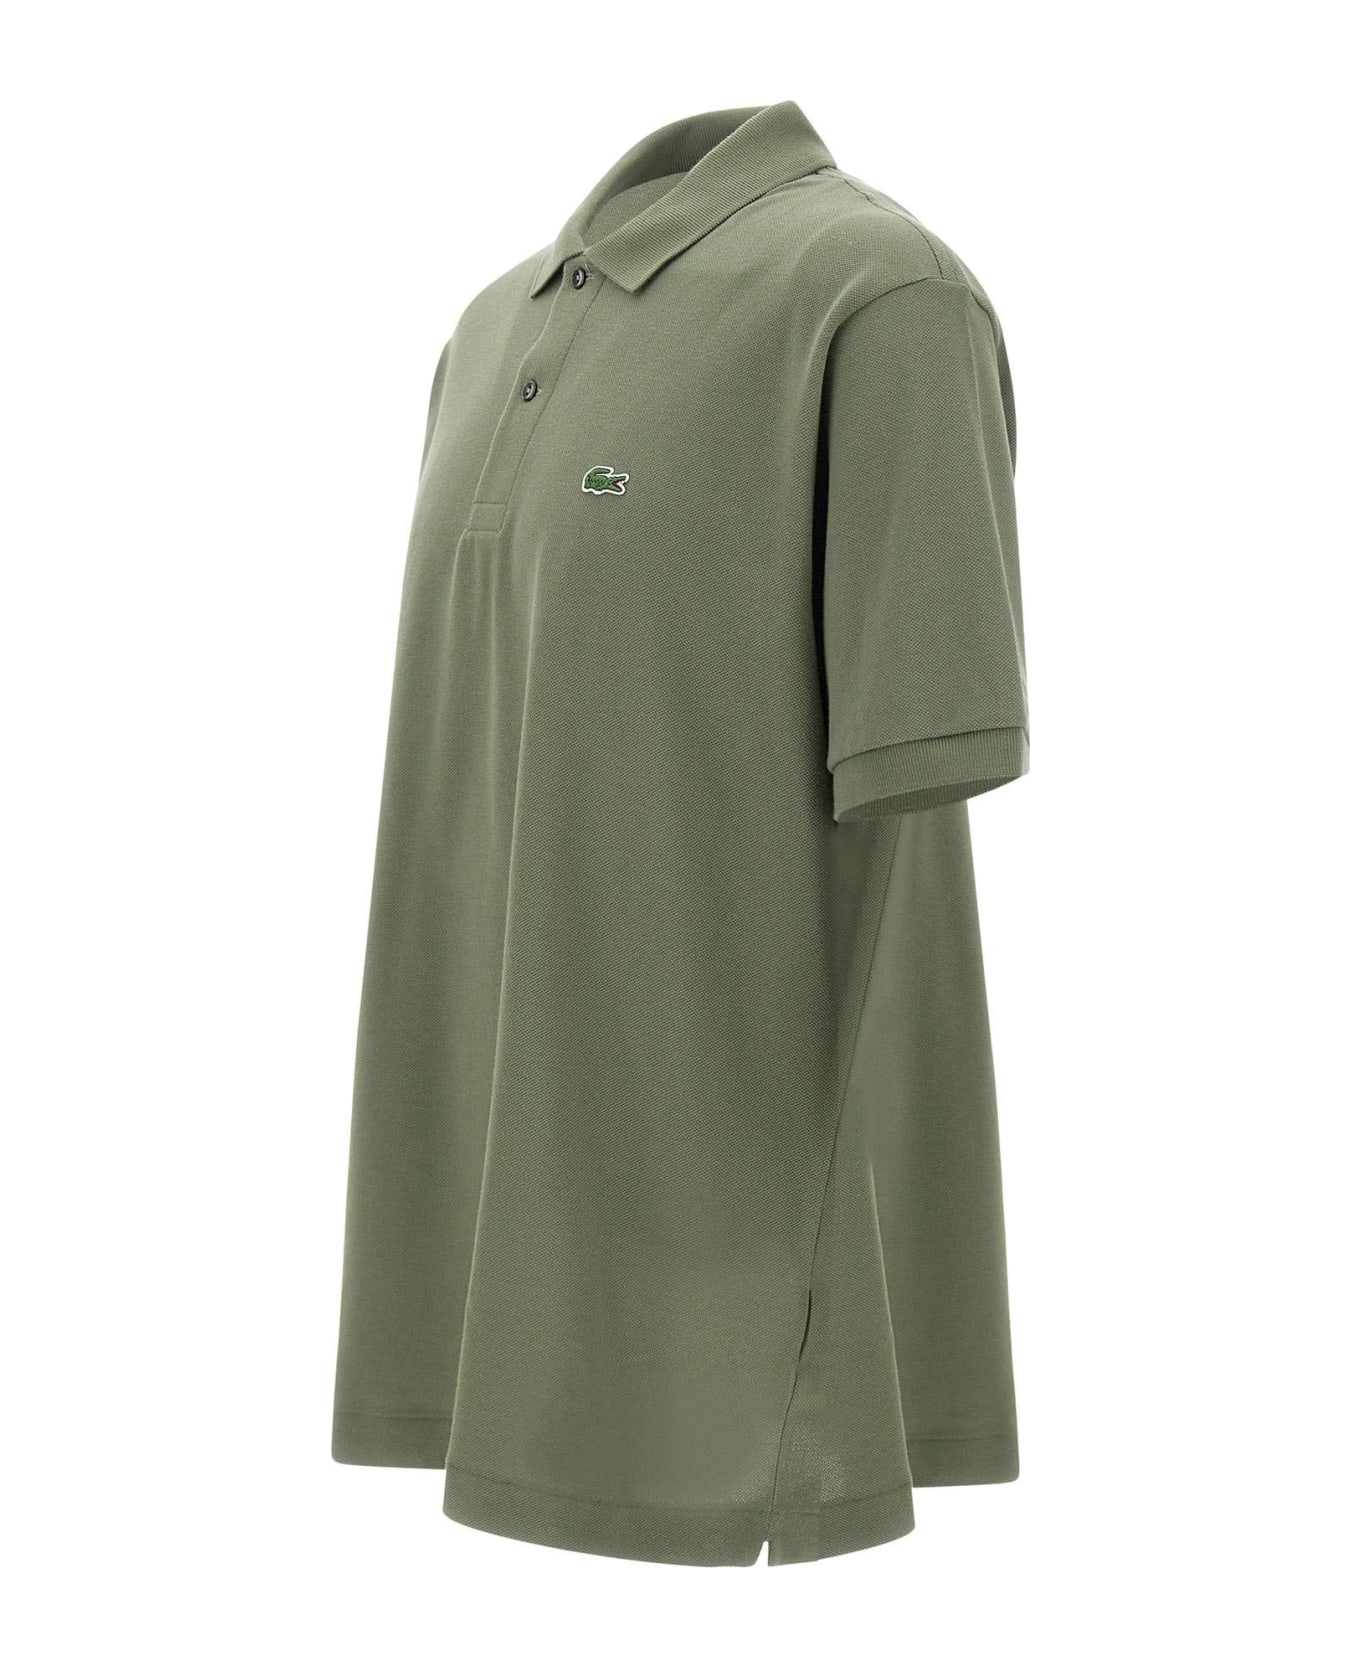 Lacoste Piquet Cotton Polo Shirt - GREEN